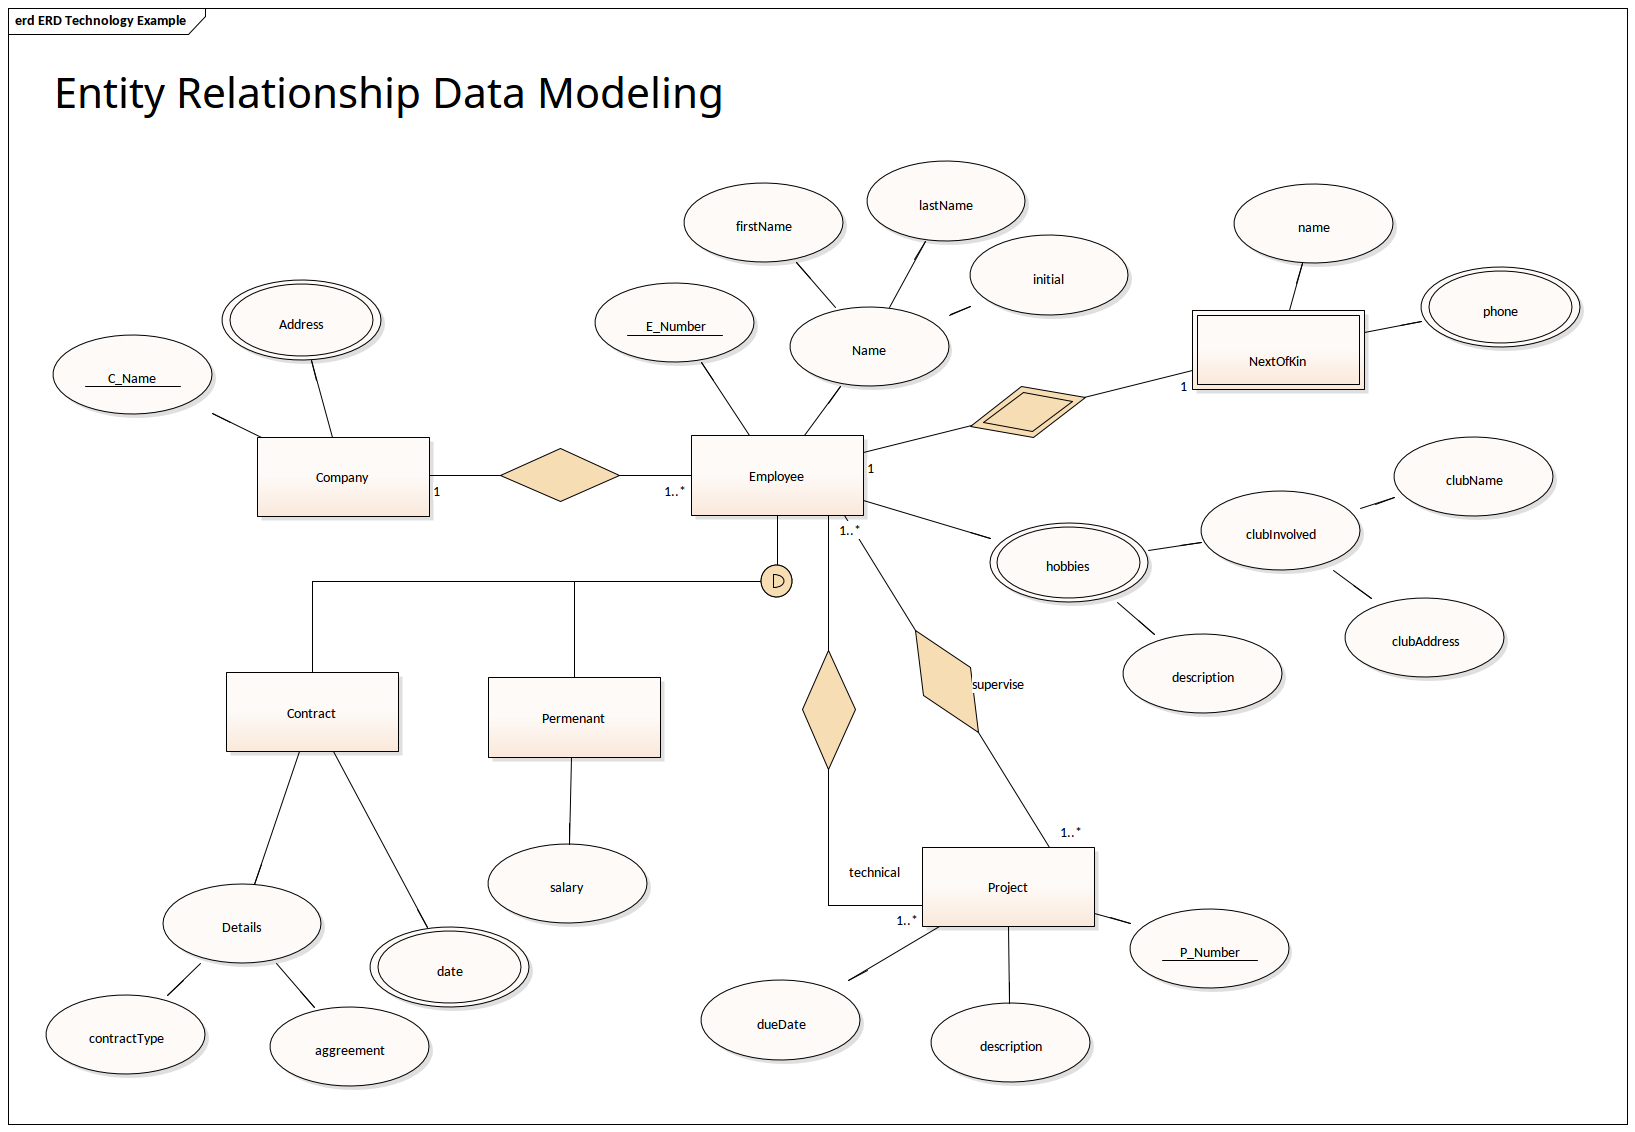 Entity Relationship Data Modeling | Enterprise Architect in Erd Model